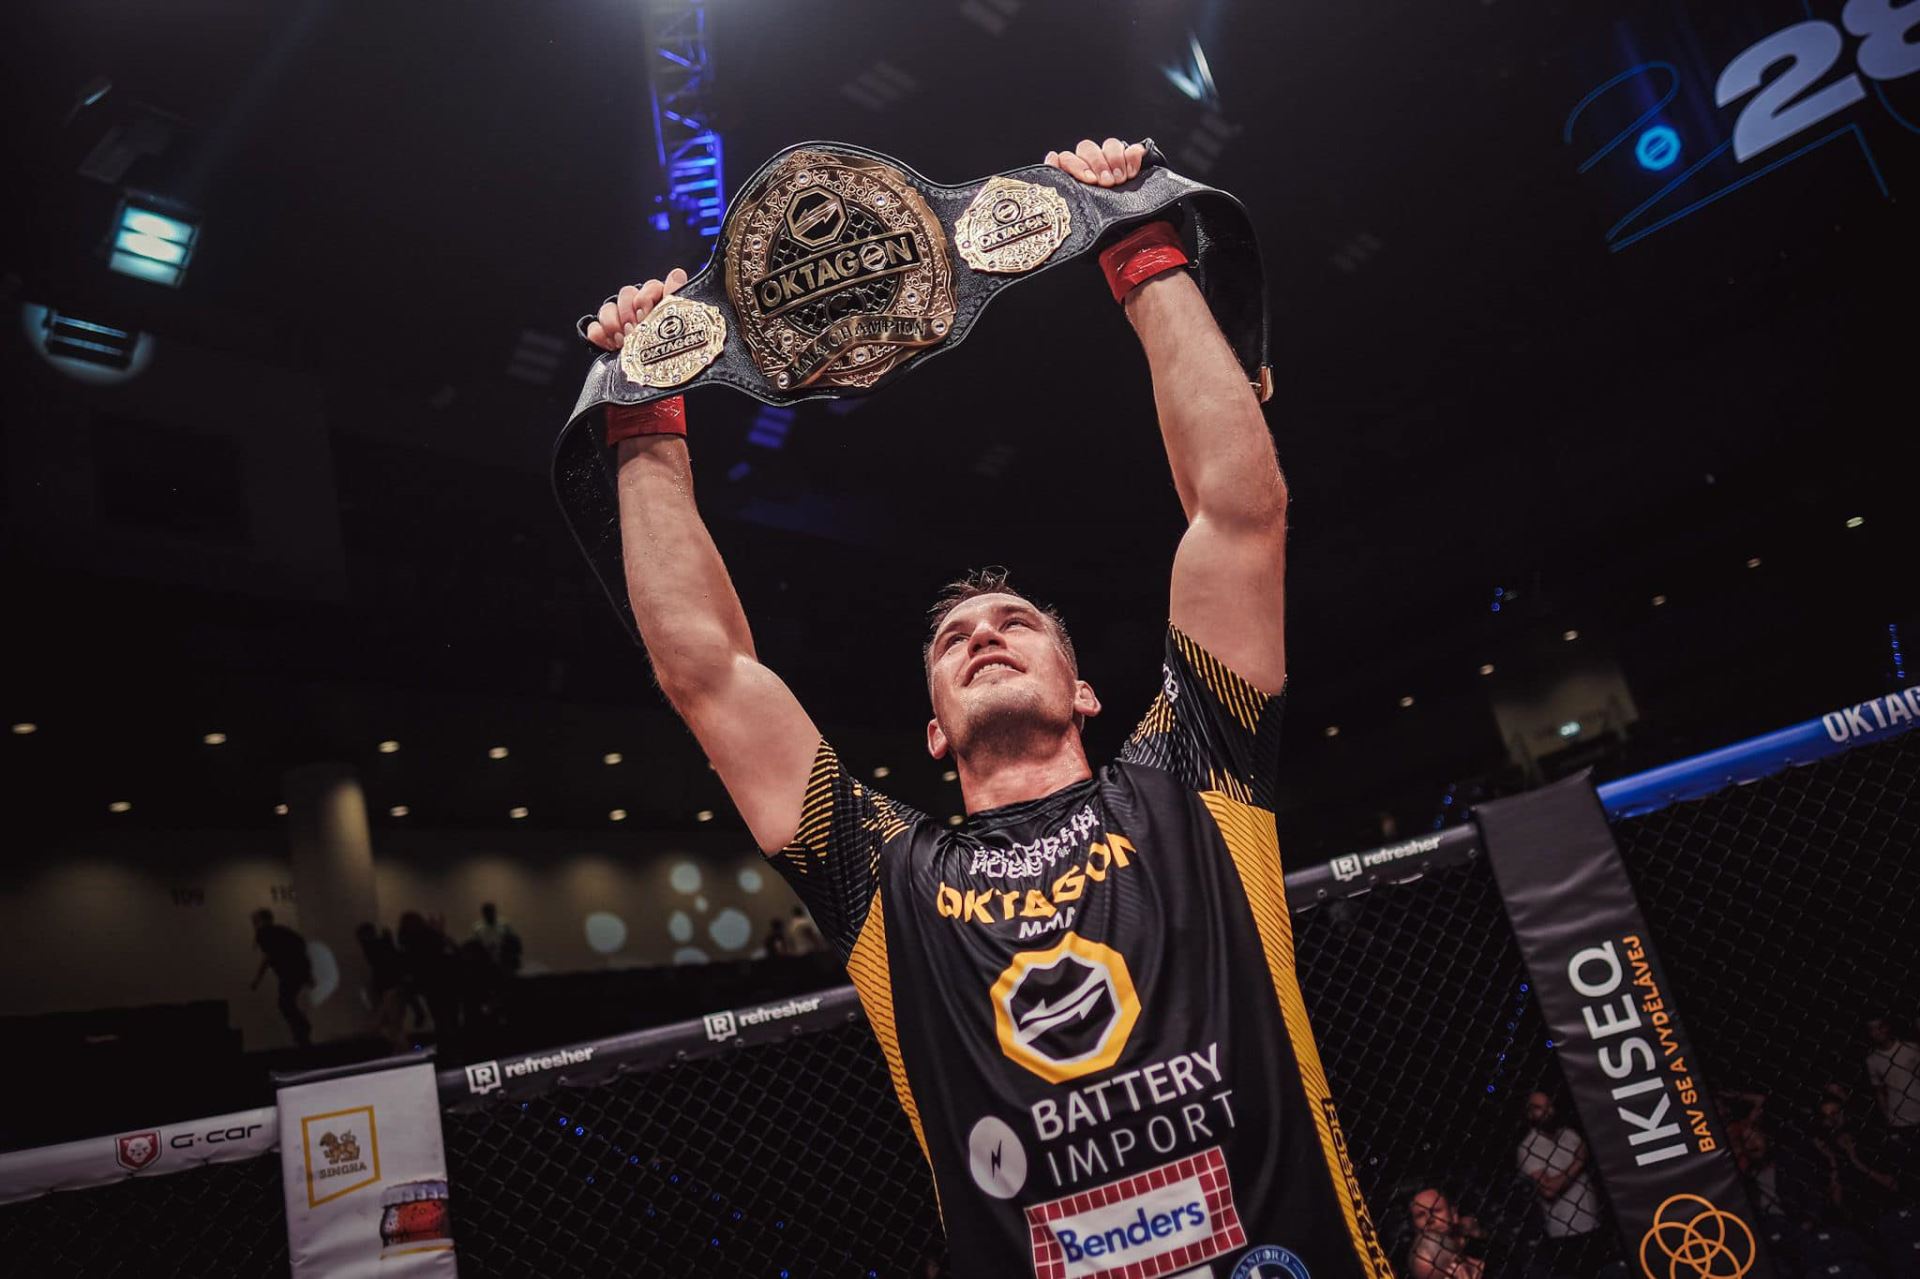 Viktor Pešta se stal prvním šampionem polotěžké divize organizace OKTAGON MMA